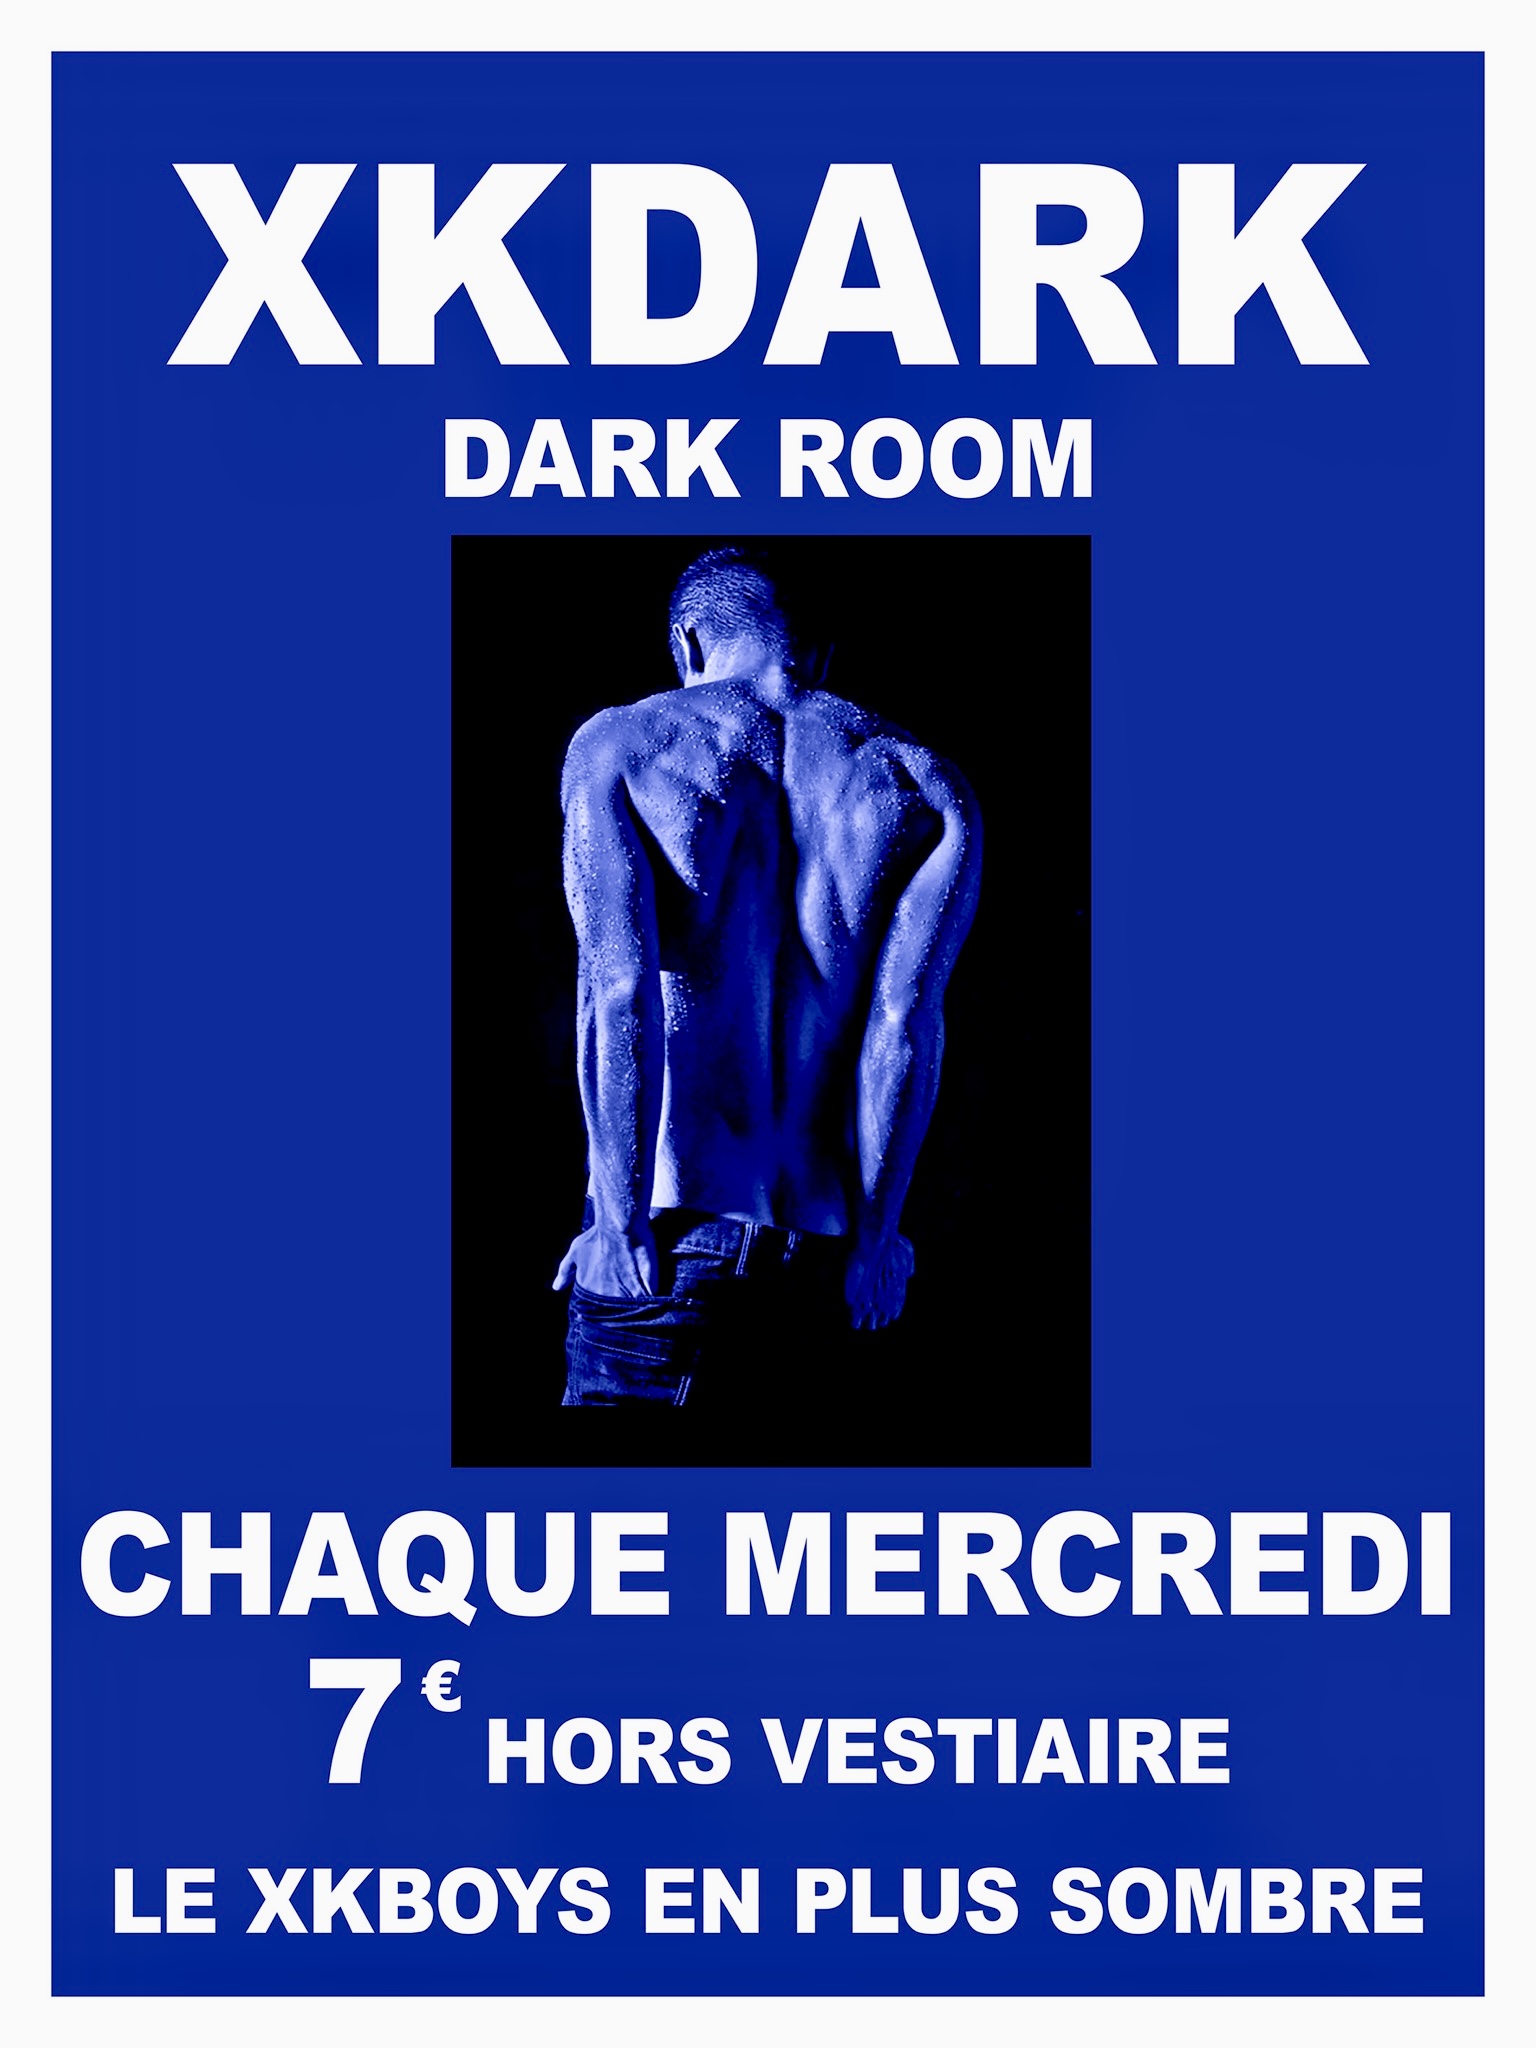 XKDARK darkroom